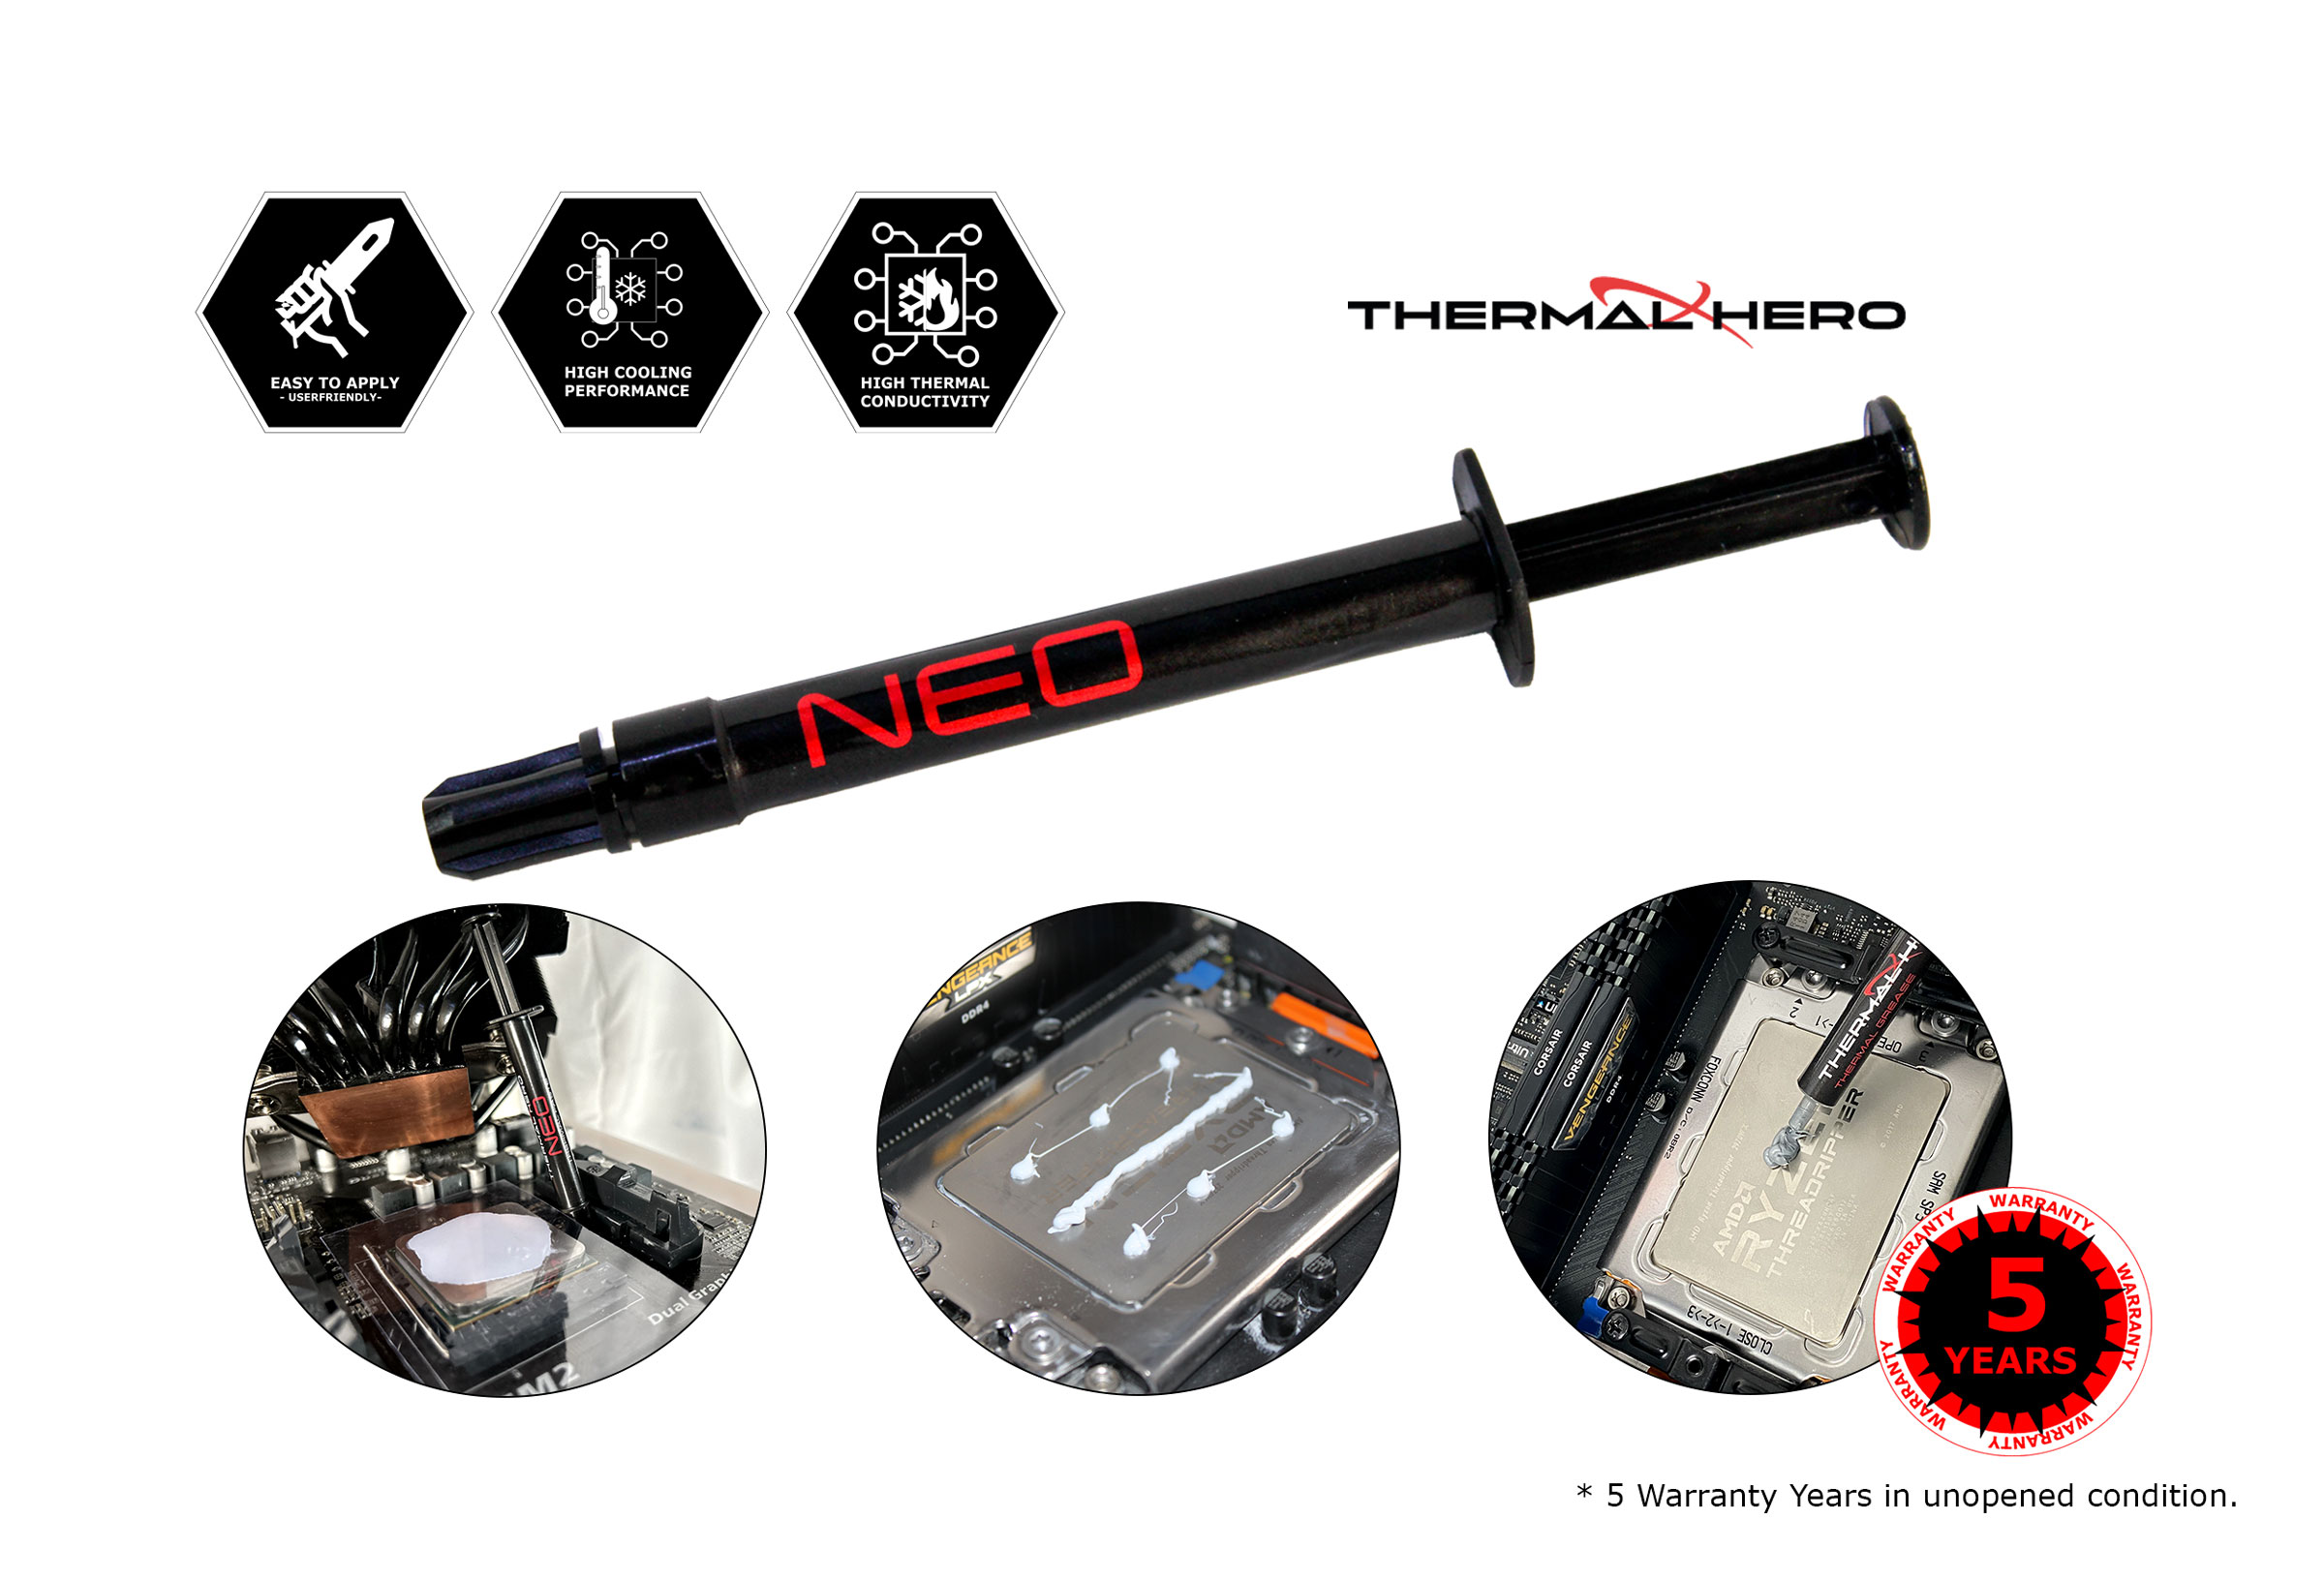 Le Thermal Hero NEO est une pâte thermique à base de silicone qui